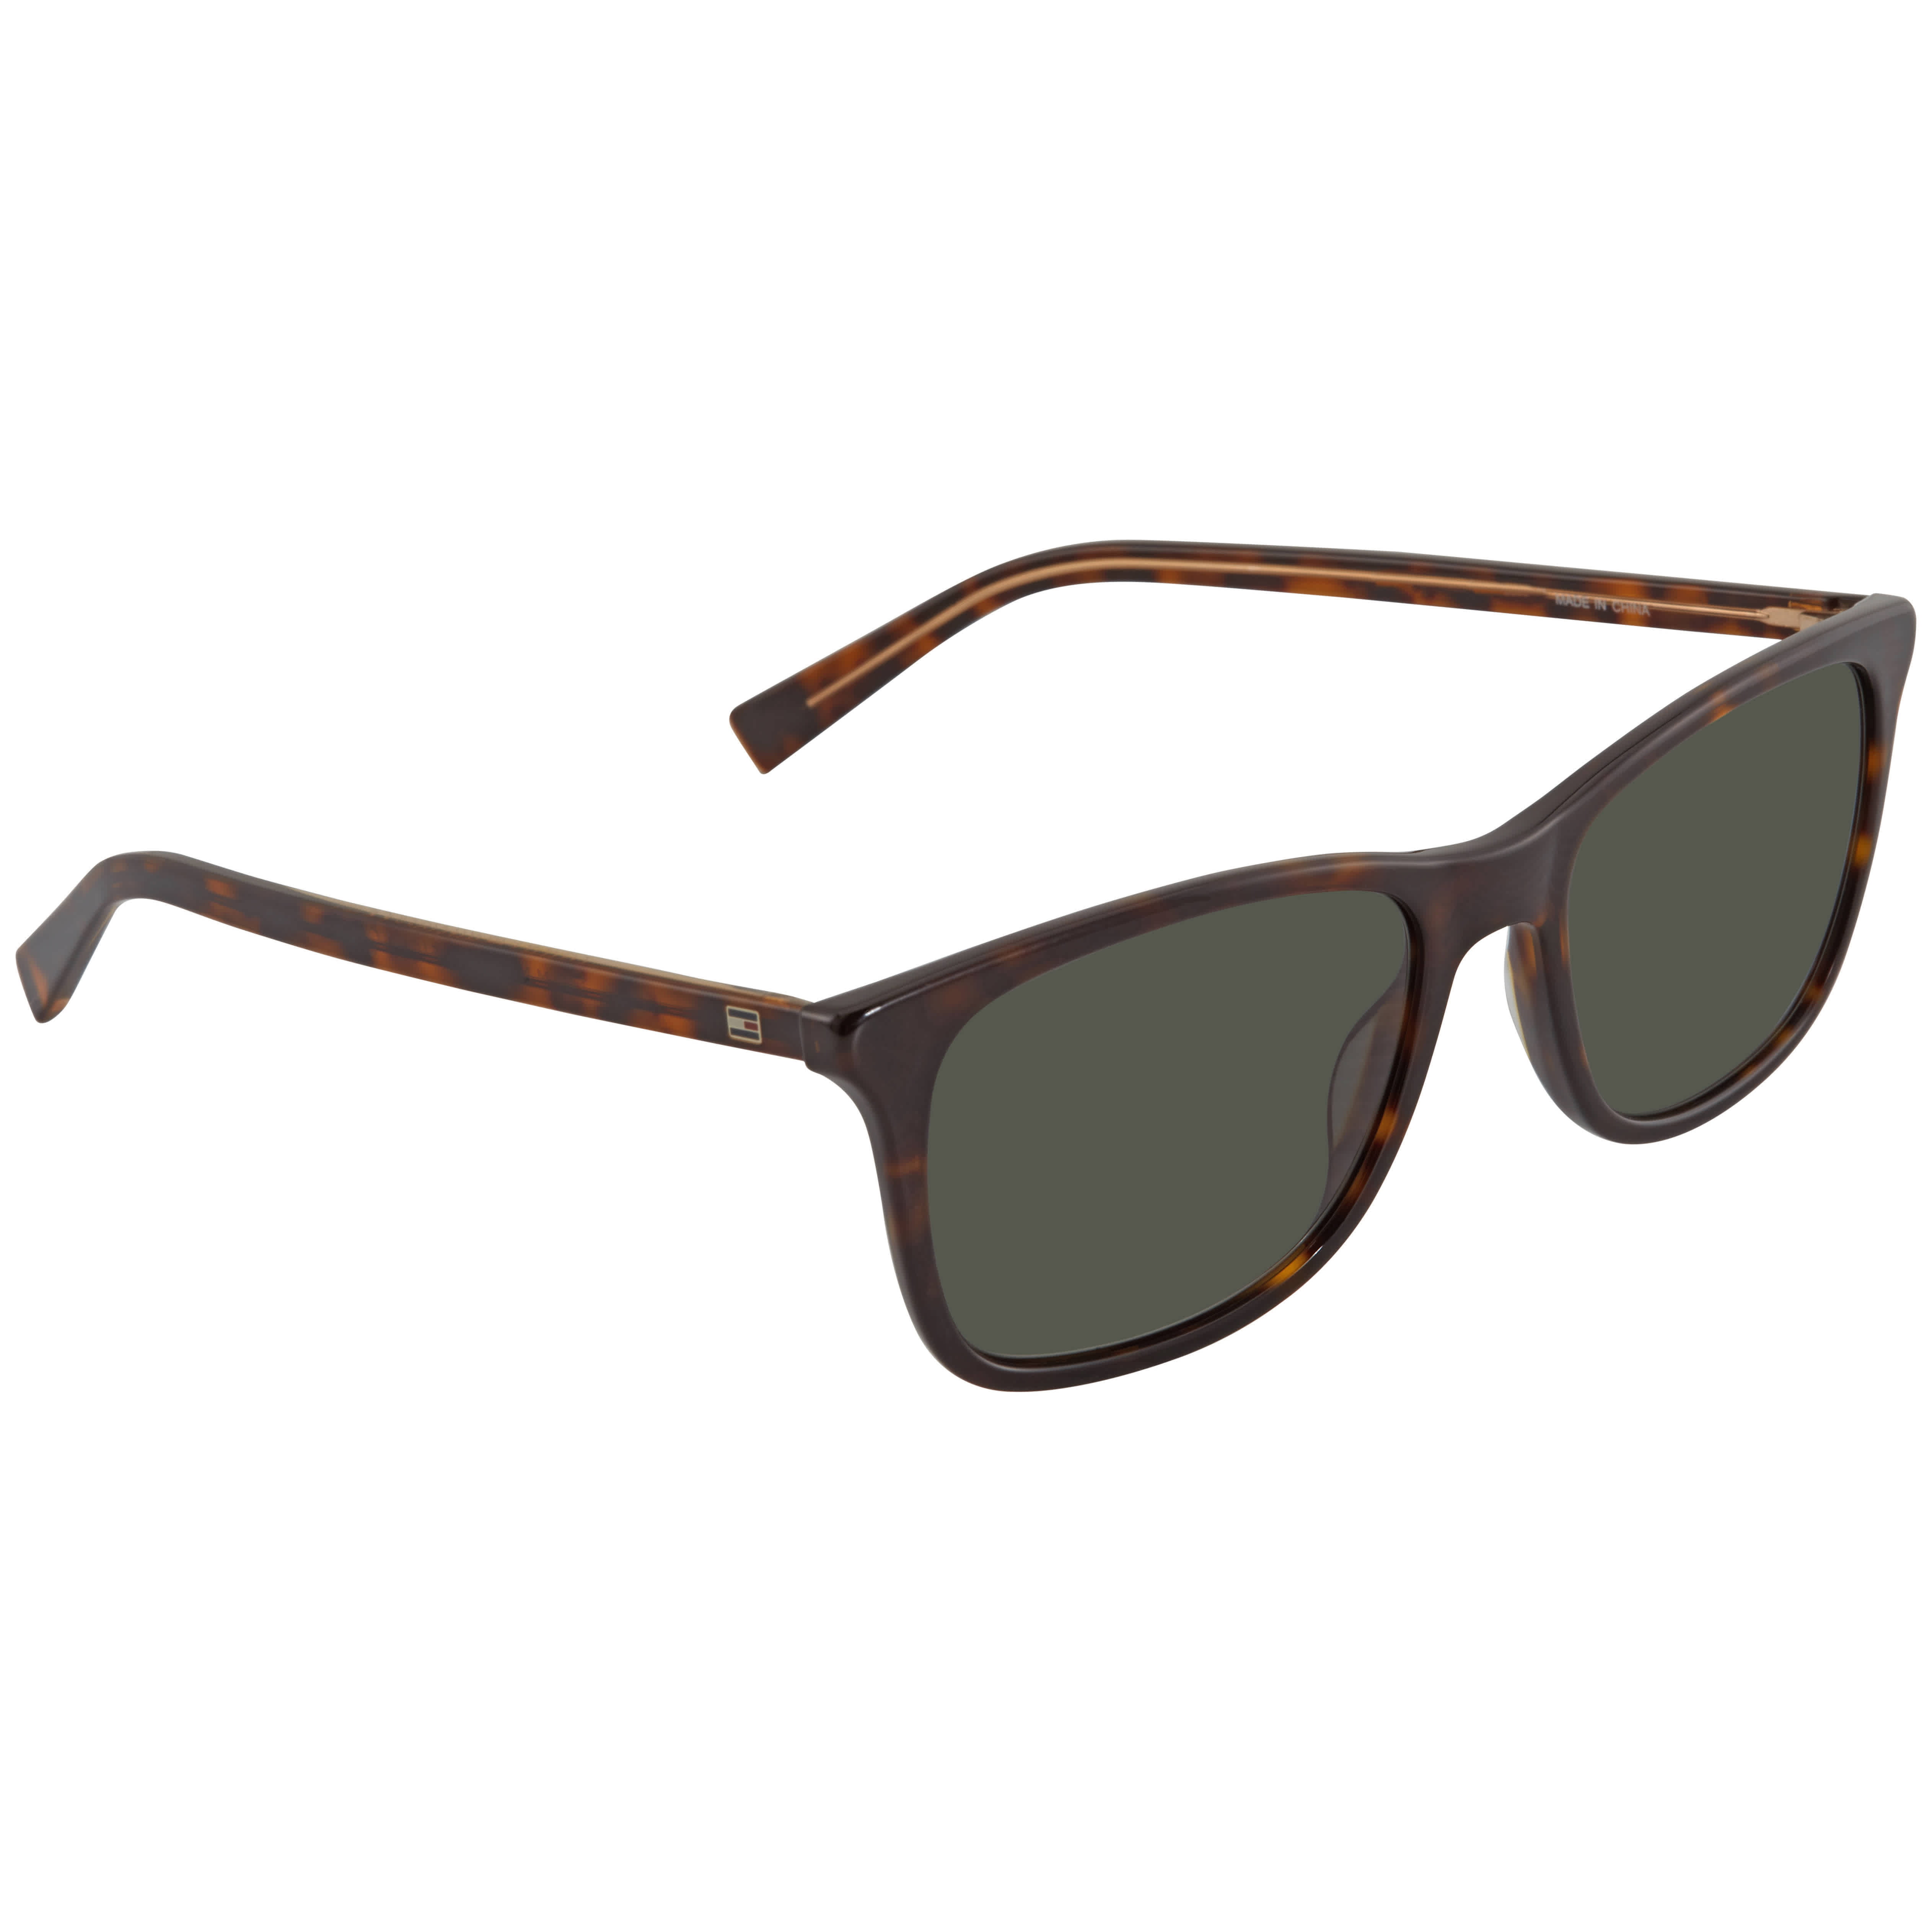 Hilfiger Men's Sunglasses Th 1449/S 0A84 54 Walmart.com